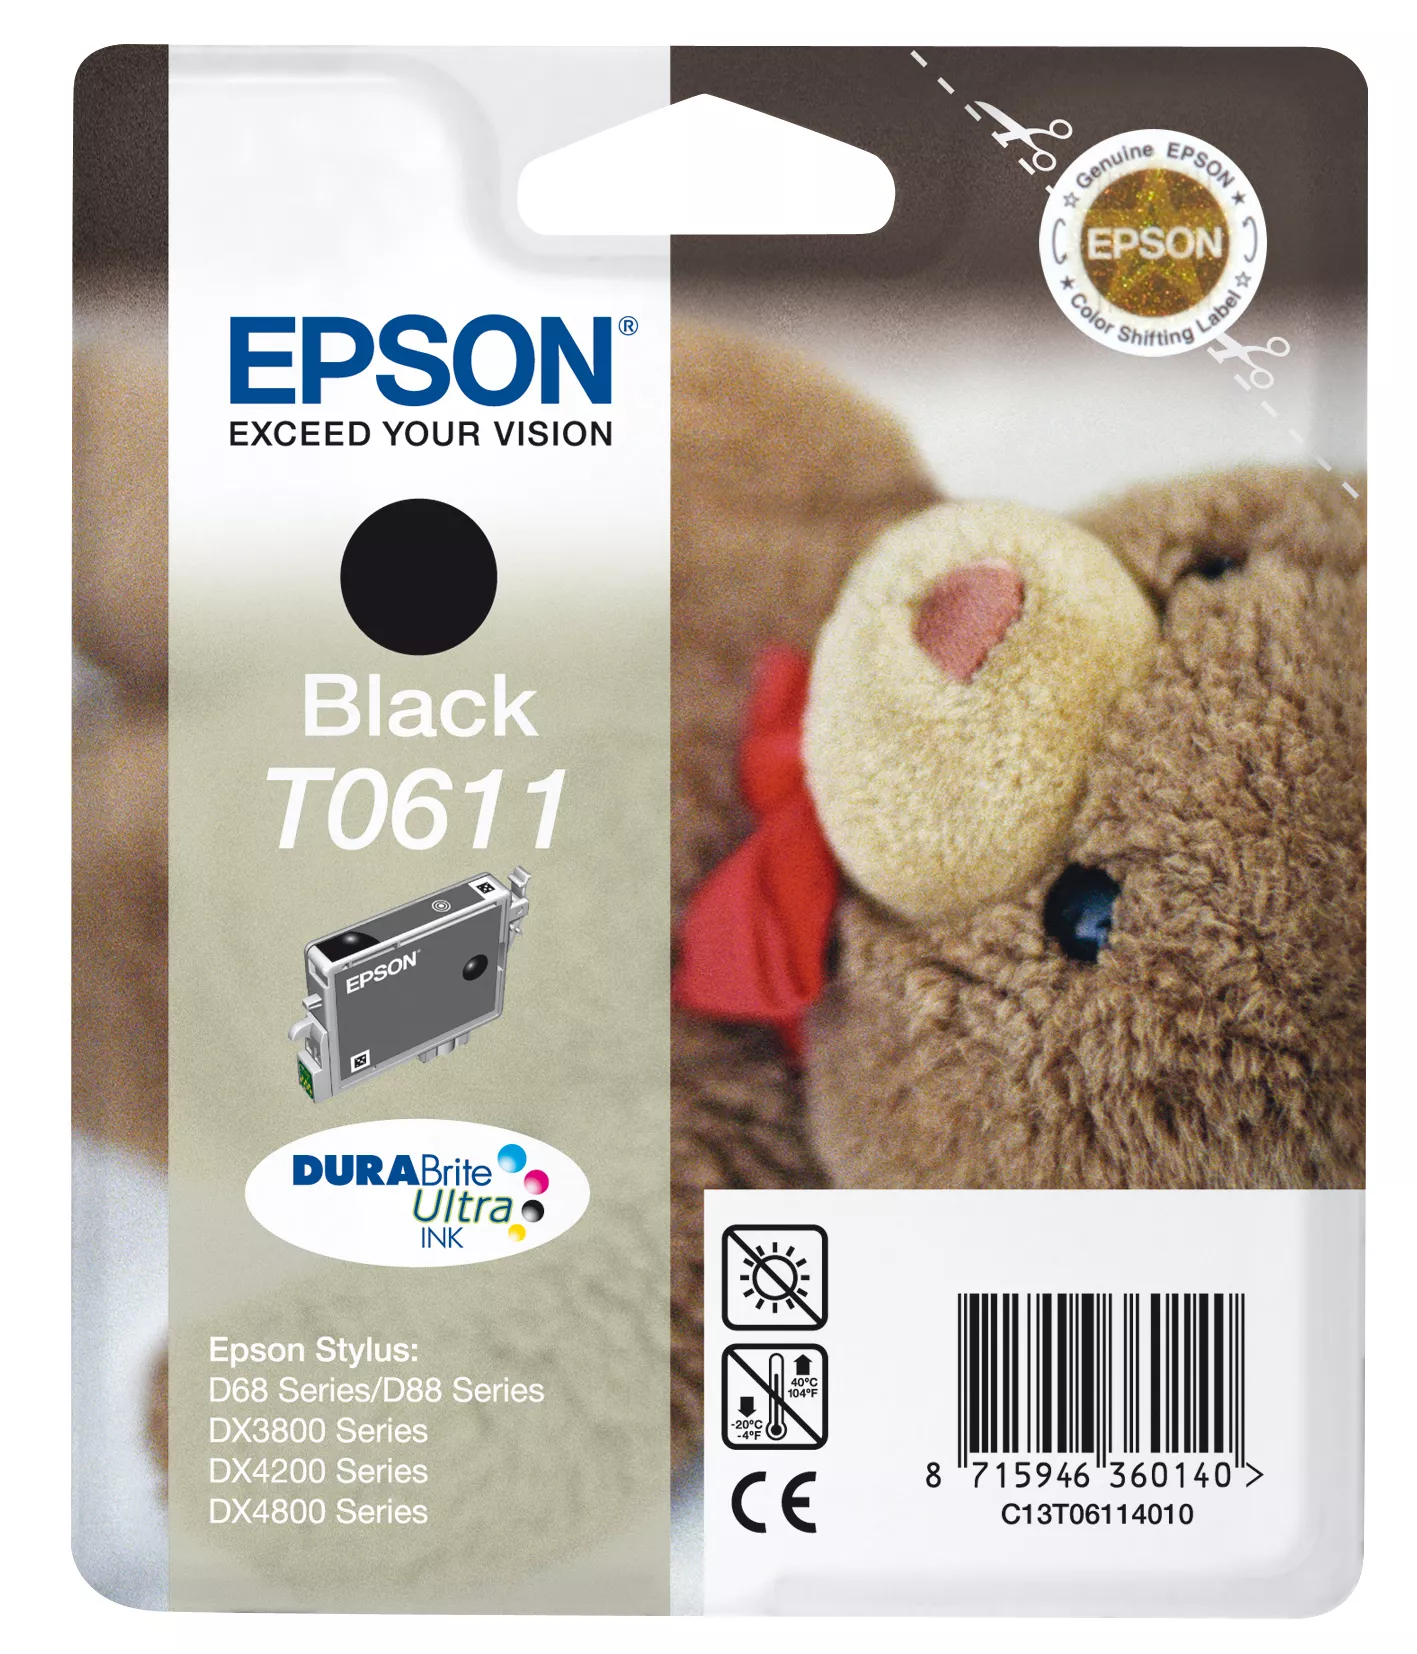 Vente Epson Teddybear Cartouche "Ourson" - Encre DURABrite Epson au meilleur prix - visuel 2